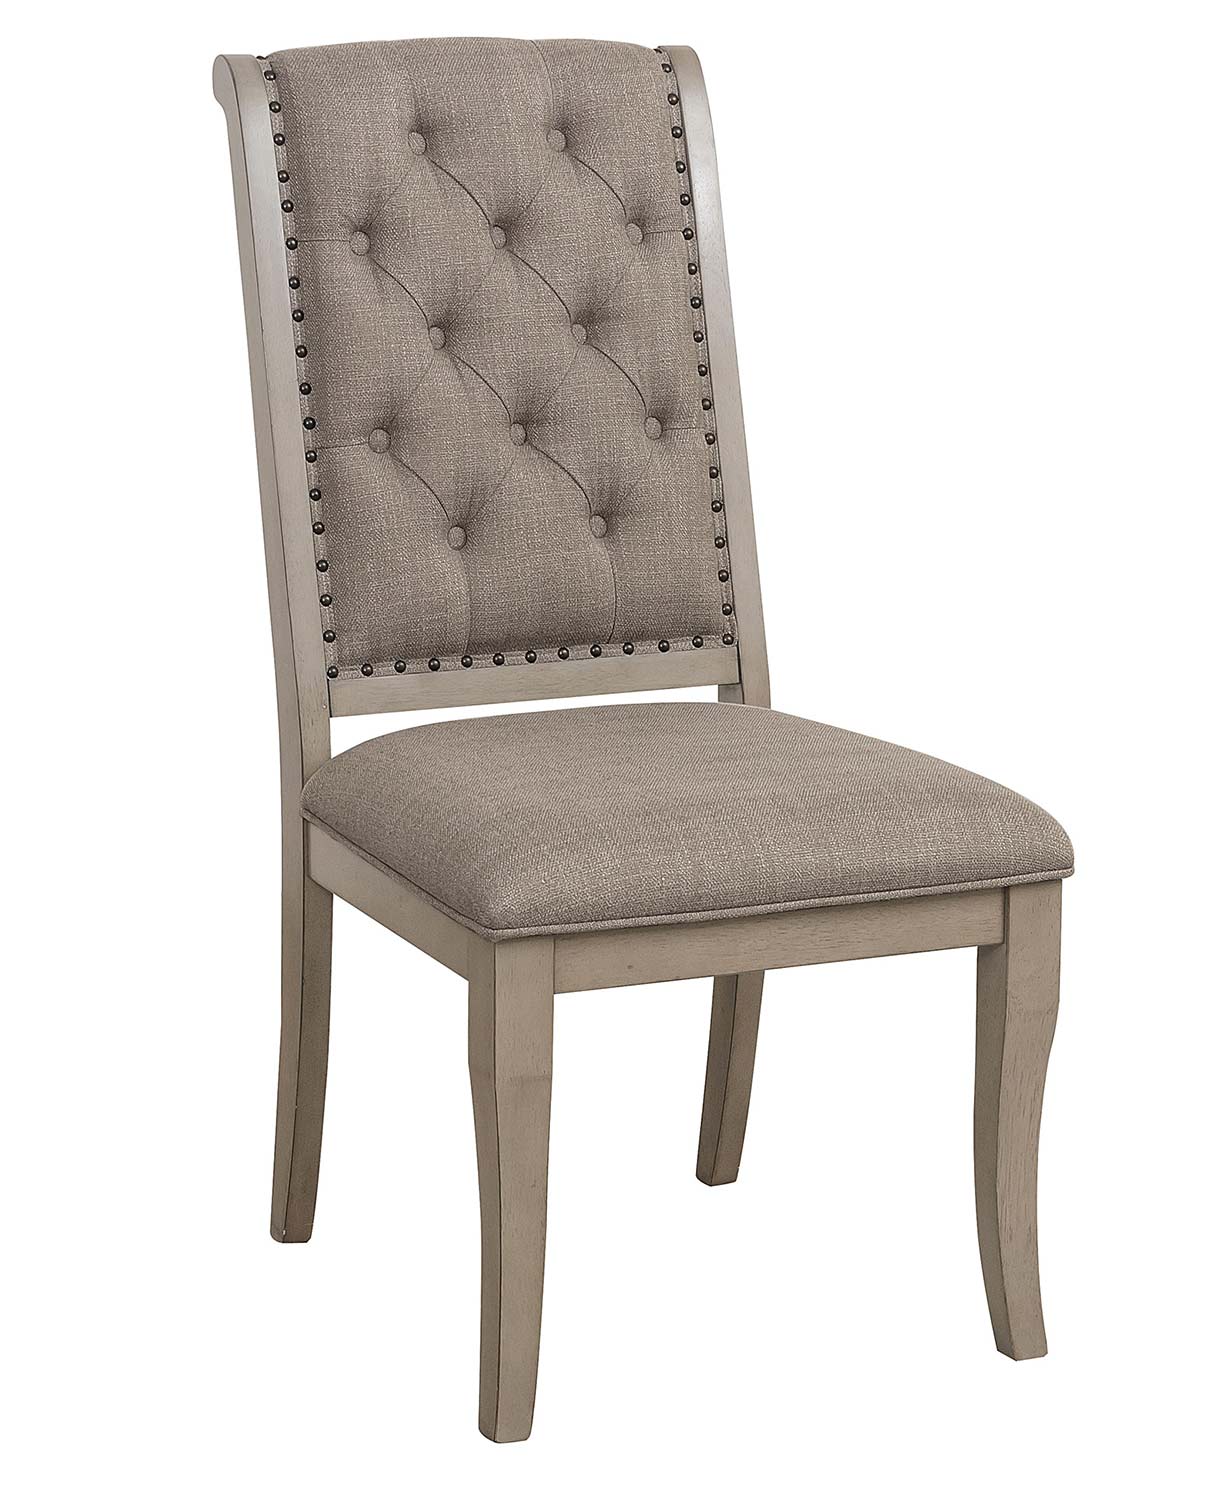 Homelegance Vermillion Side Chair - Bisque